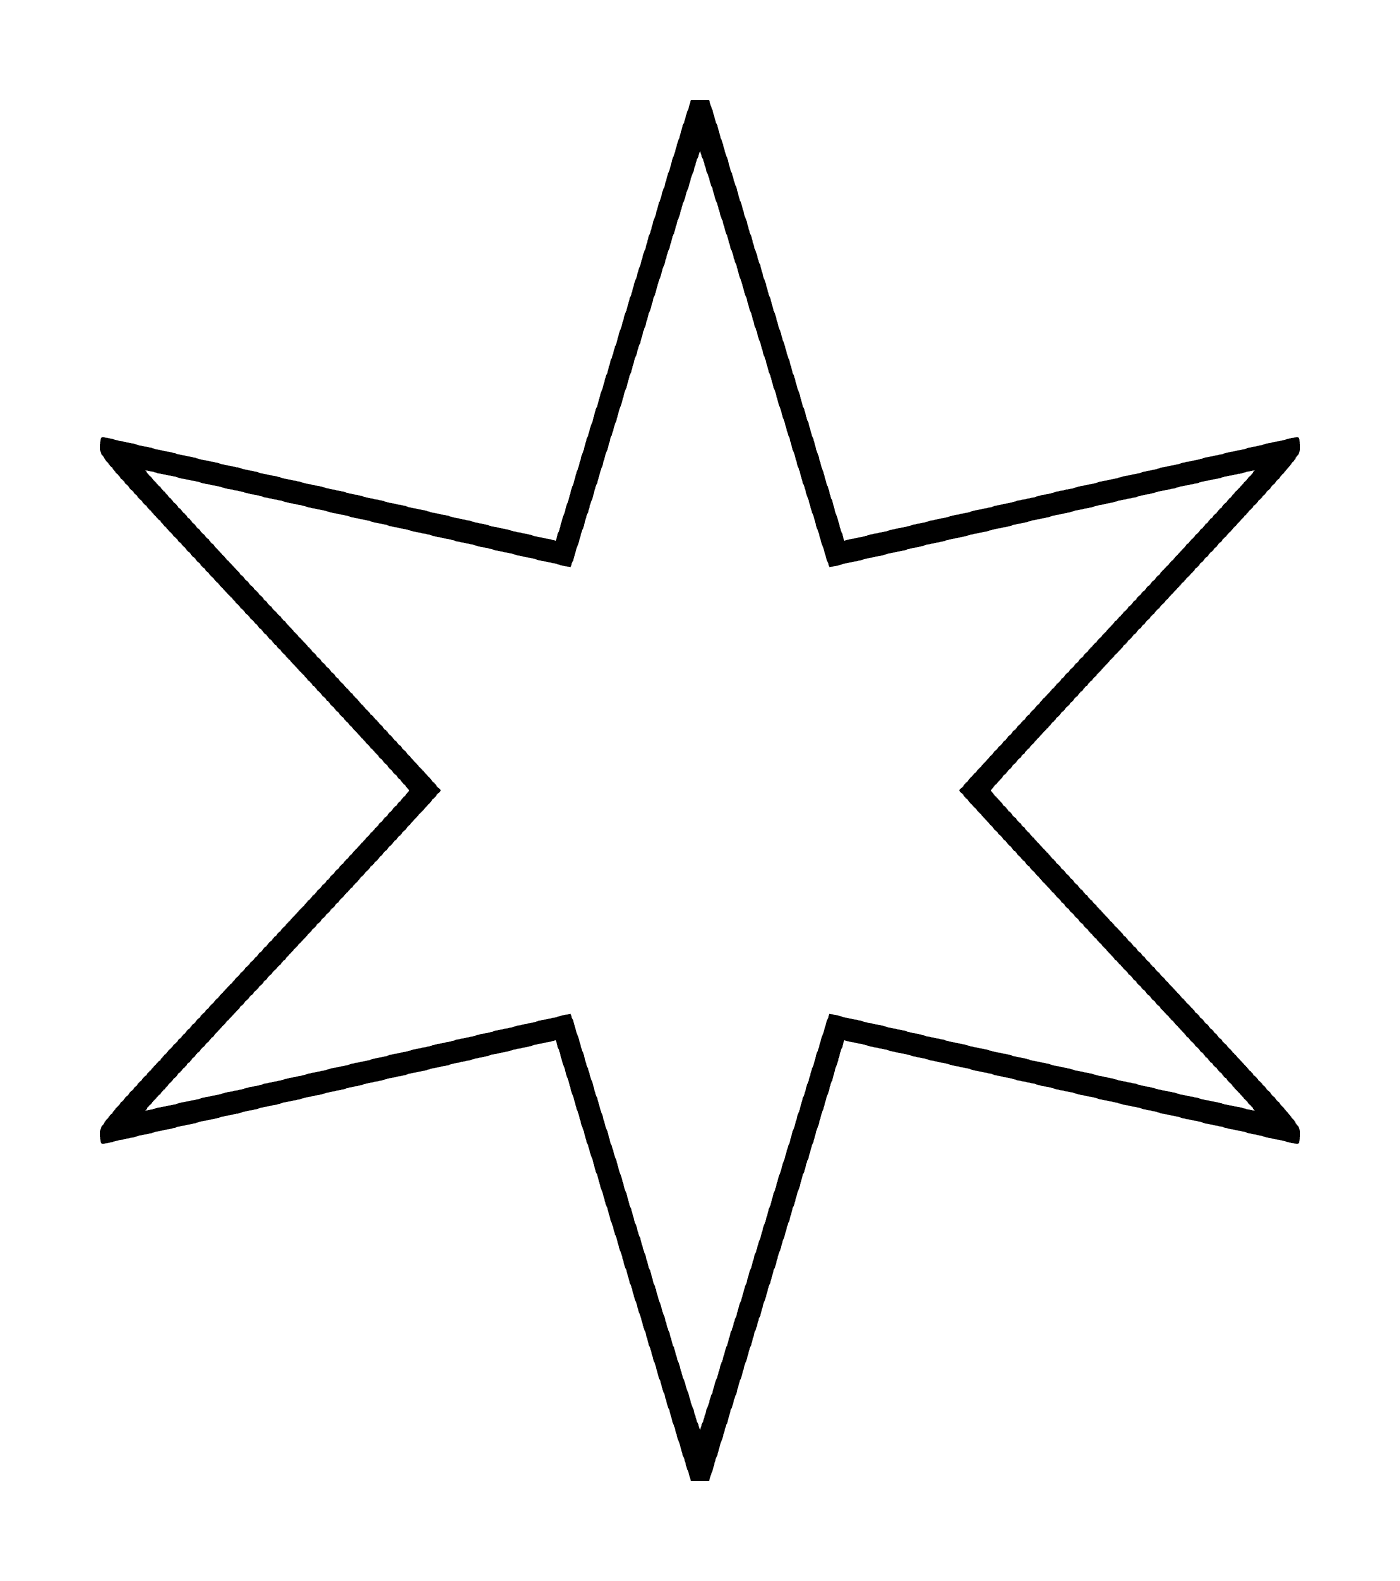  Ein sechszackiger Stern, der einer Blume ähnelt 